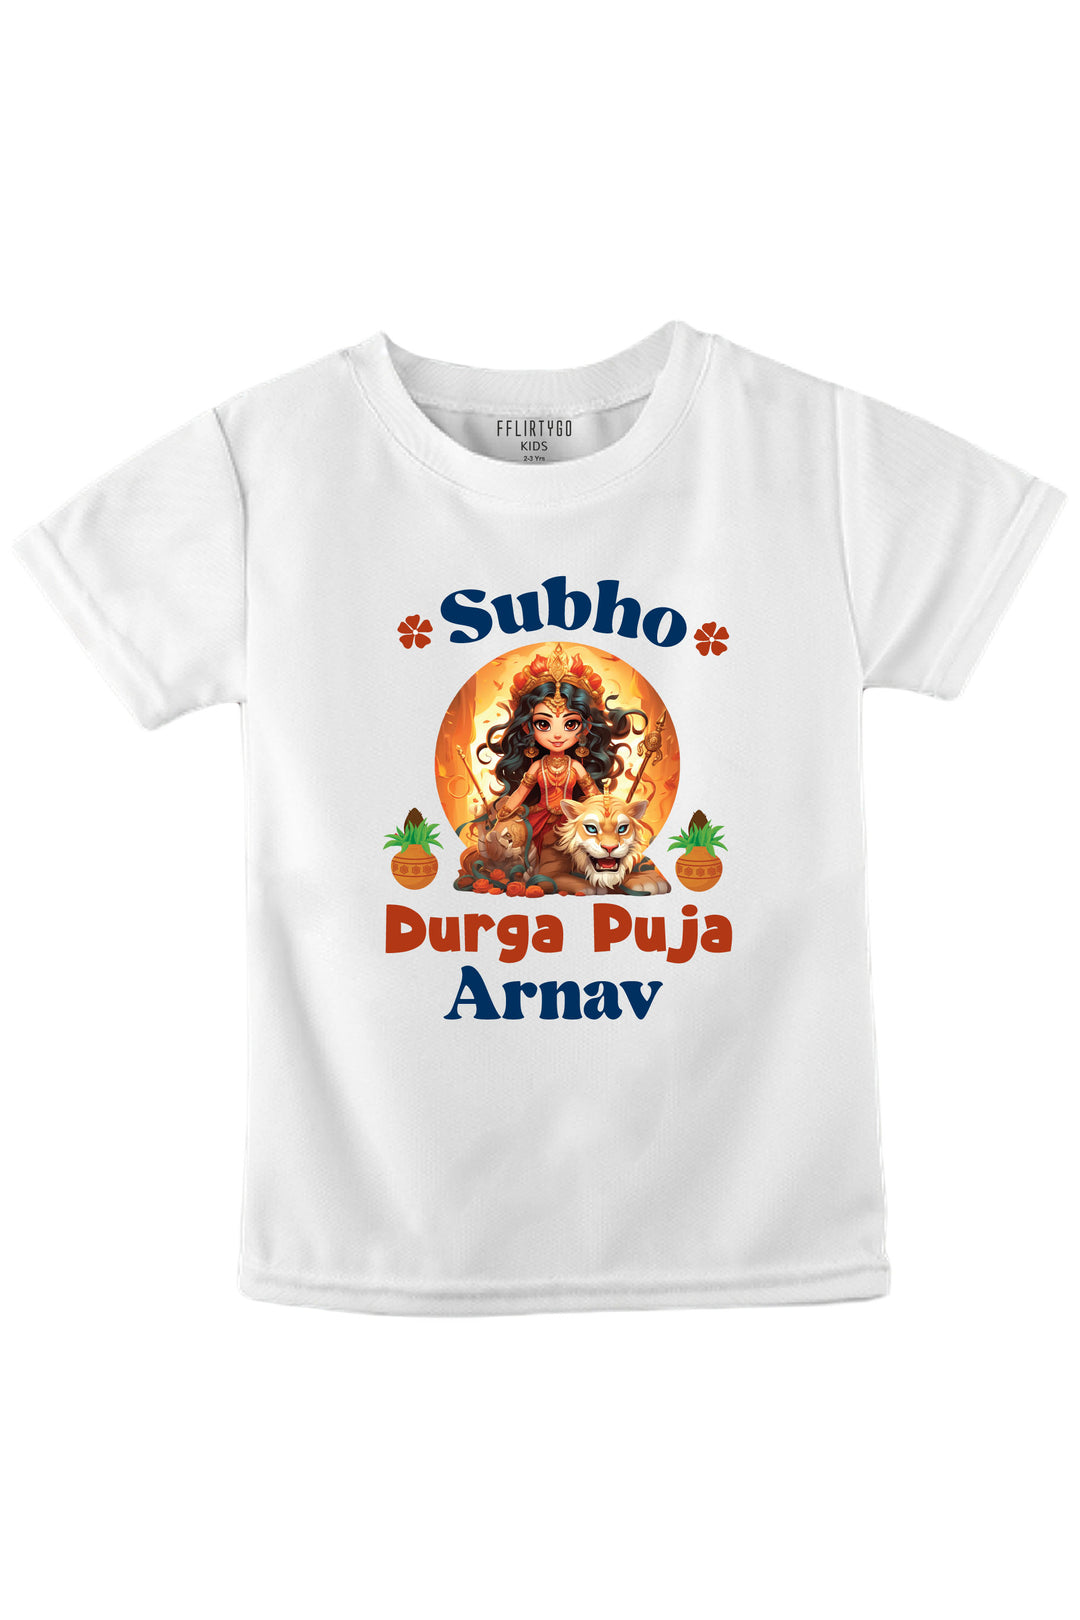 Subho Durga Puja Kids T Shirt w/ Custom Name